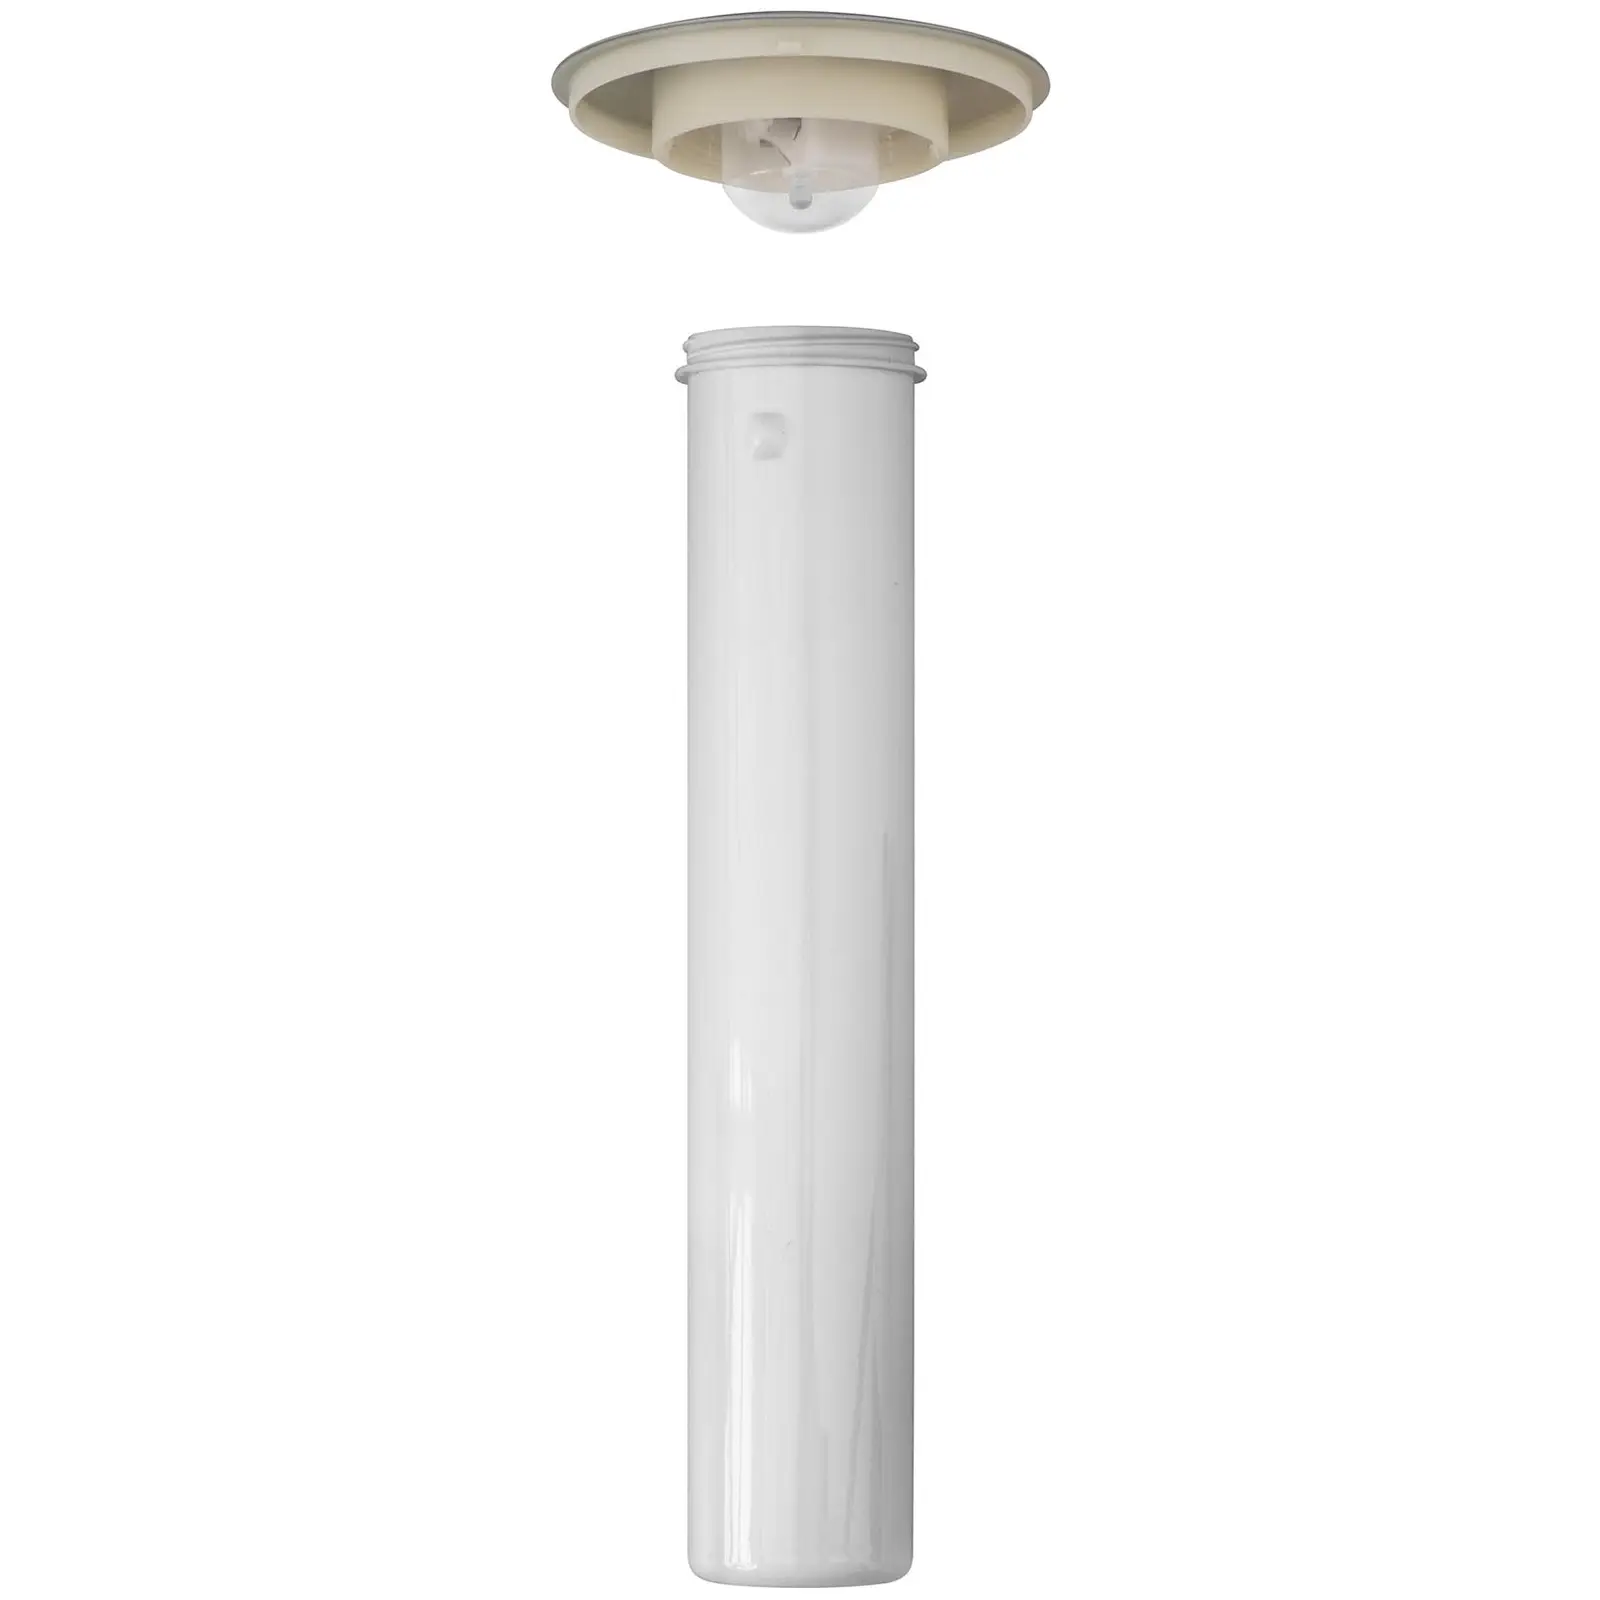 Saftspender - 3 L - Kühlsystem - Gläser bis 163 mm - mit LED-Beleuchtung - silbern - Royal Catering